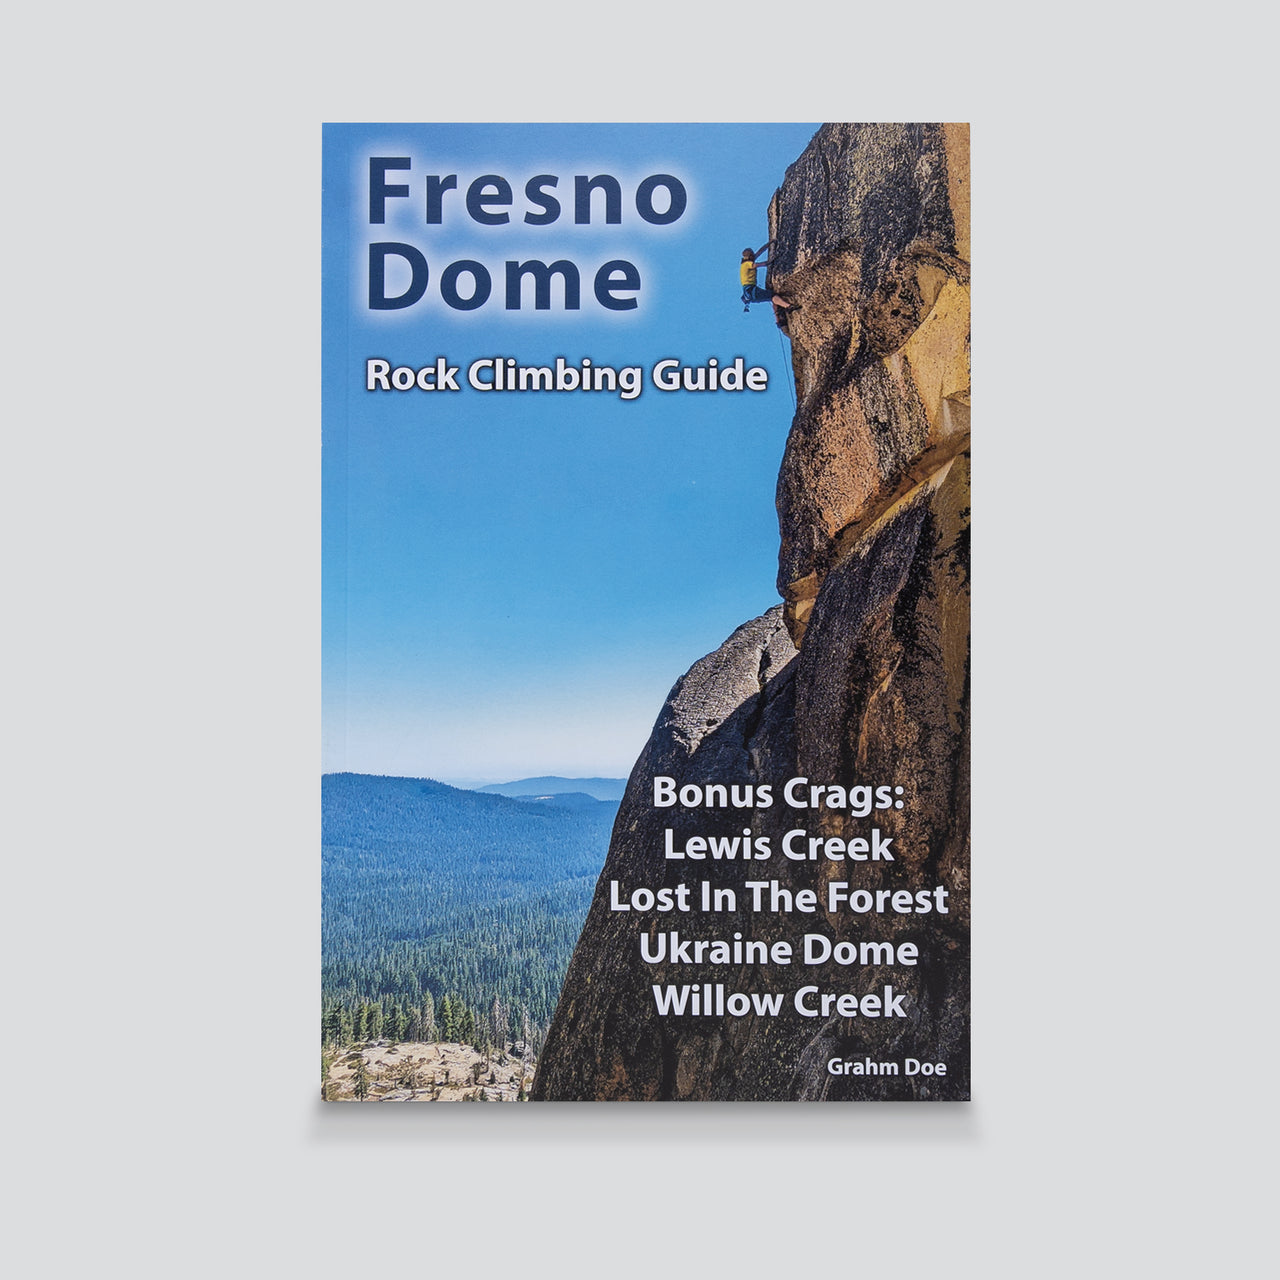 Guidebook - Fresno Dome Rock Climbing Guide